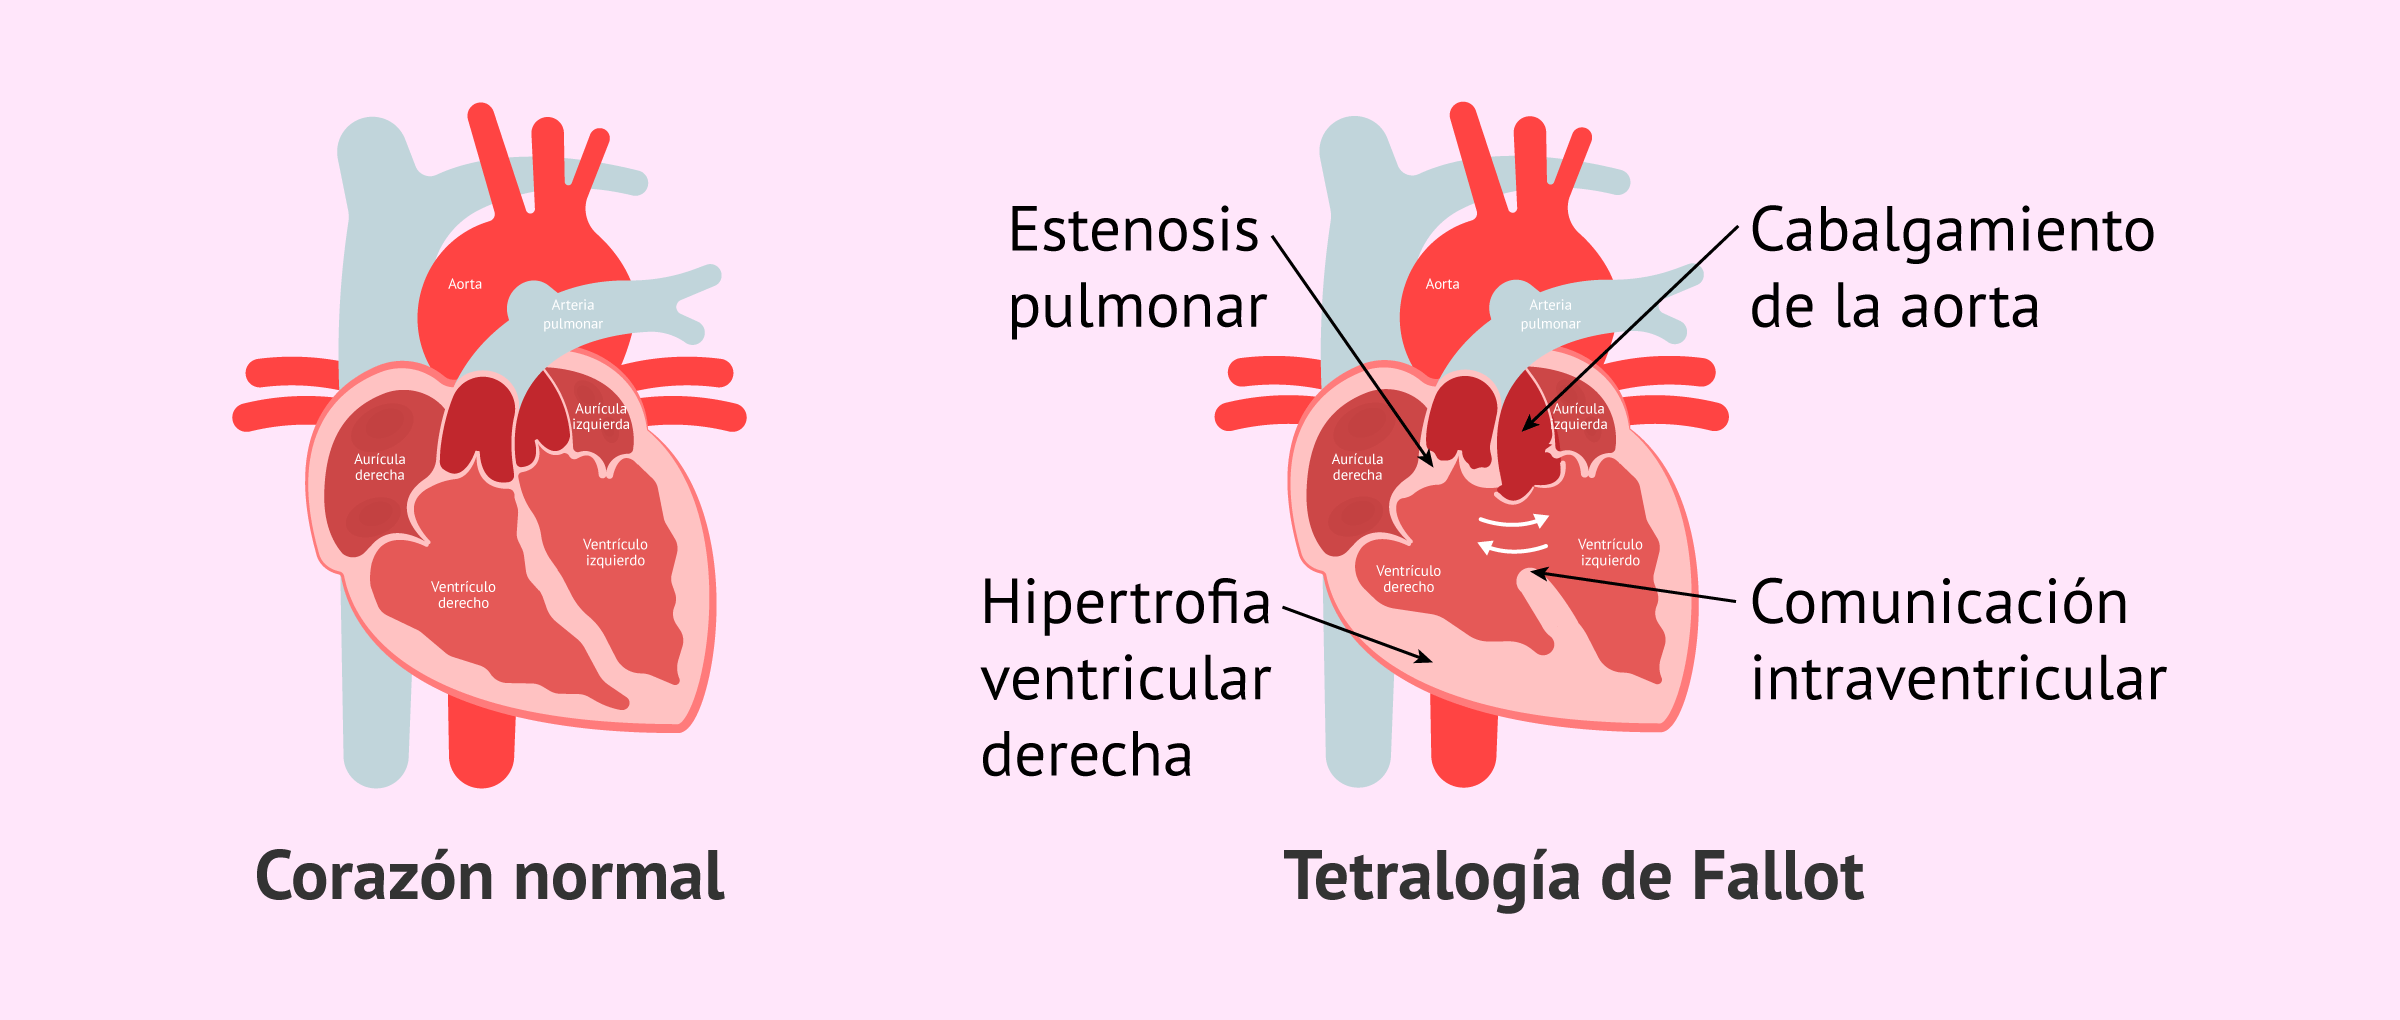 Corrección de cardiopatías